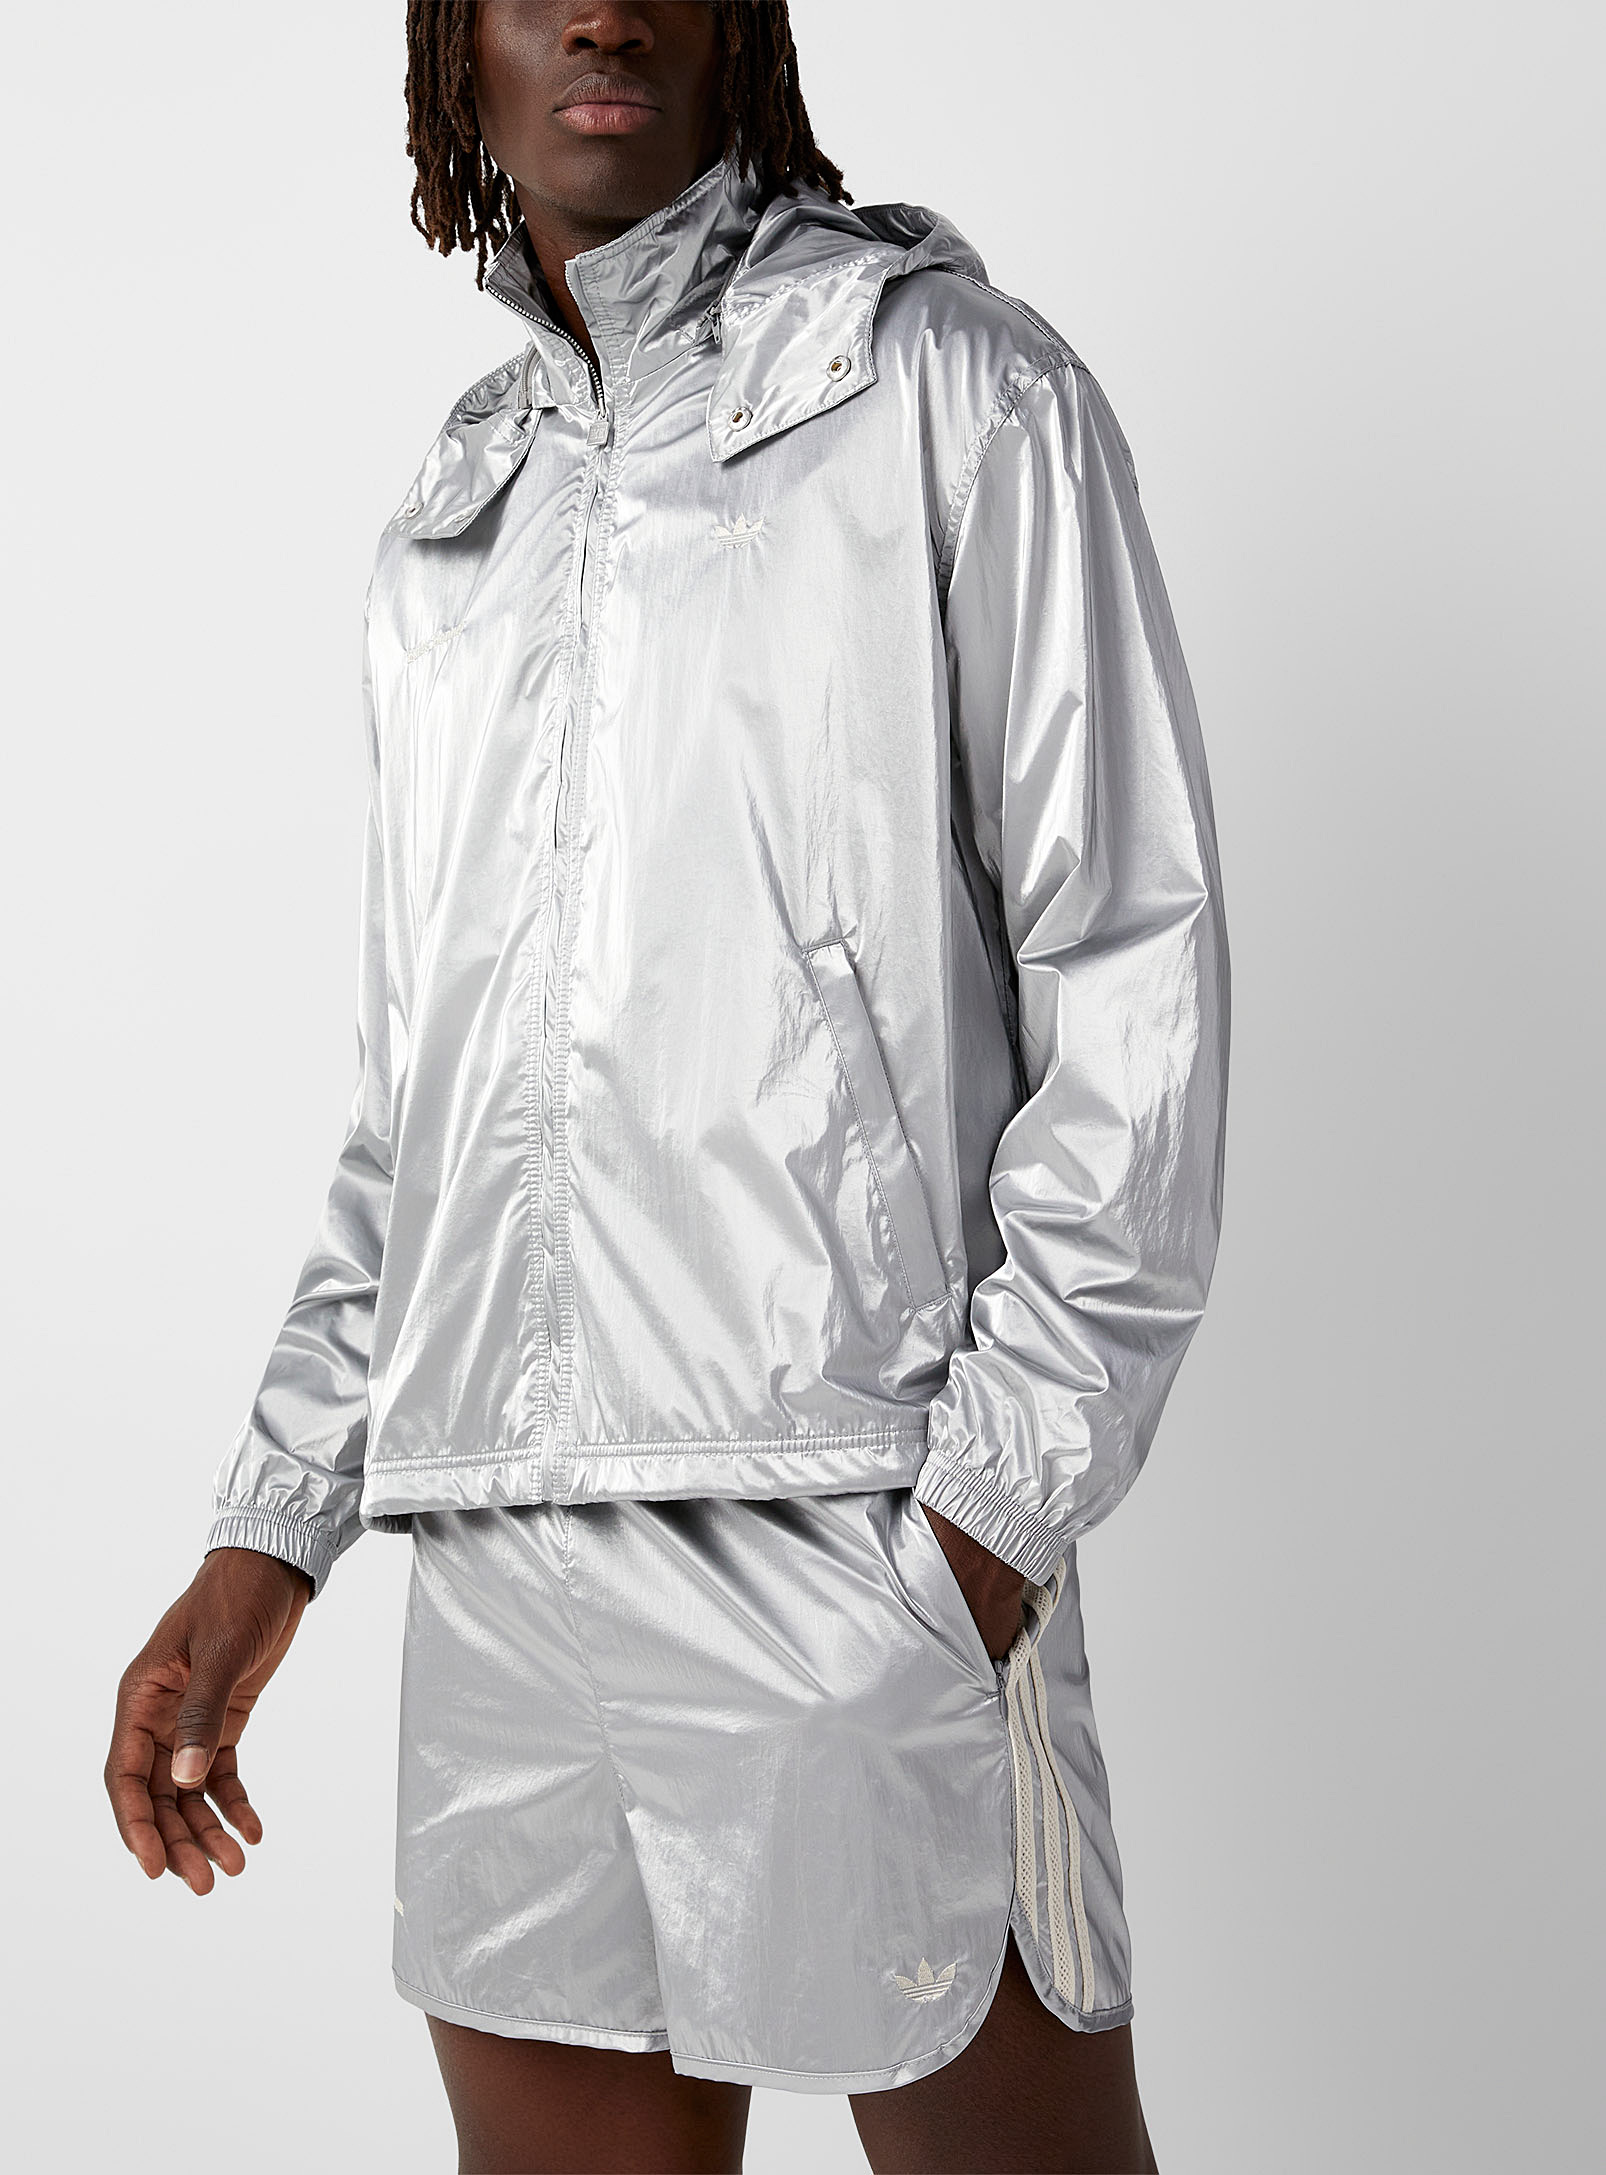 Adidas X Wales Bonner - Men's Silvery fabric Windbreaker Jacket